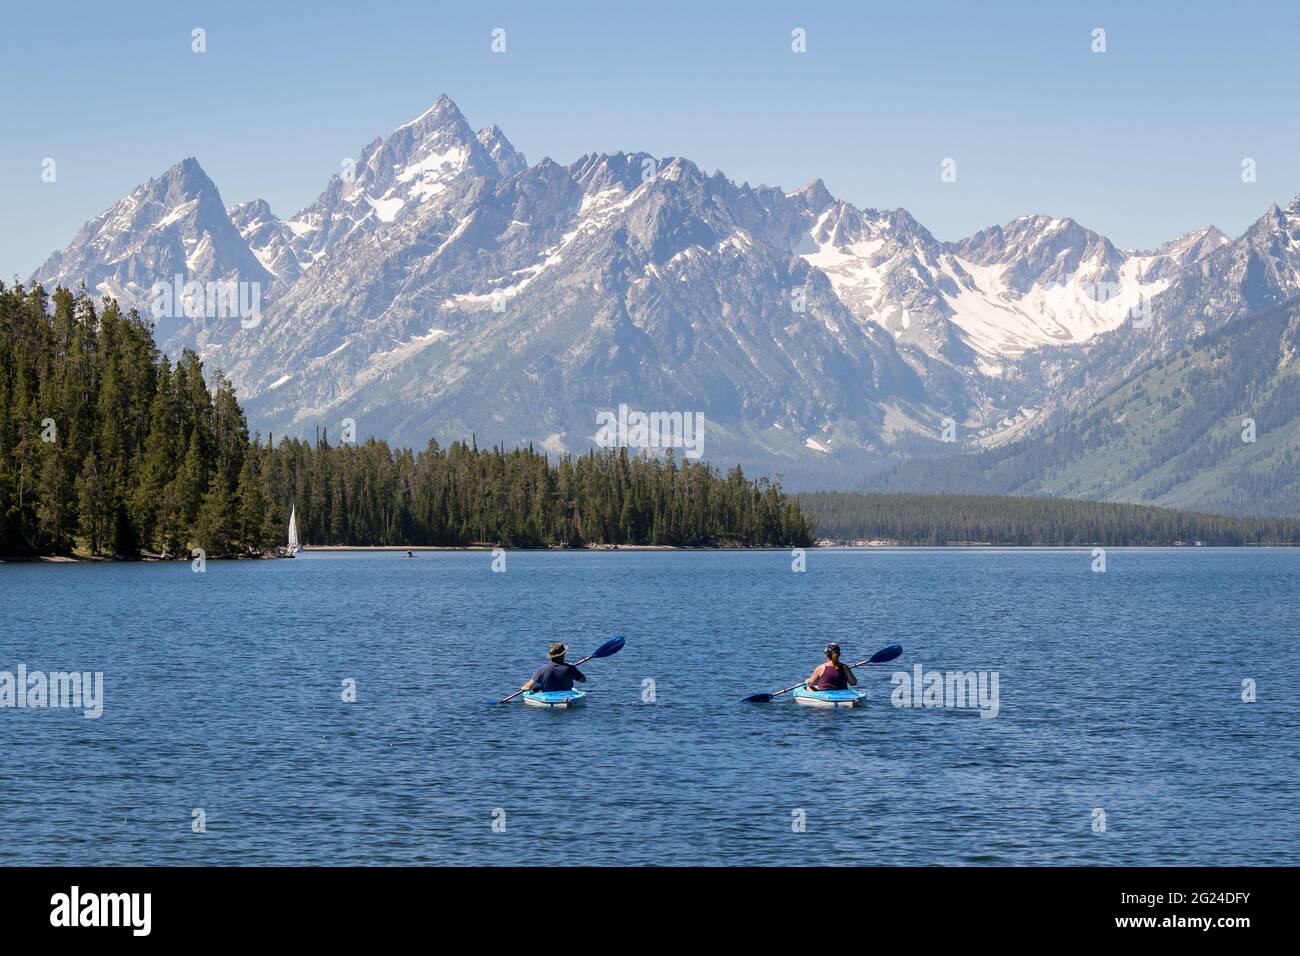 two people kayaking in Jackson Lake at Grand Teton National Park. Mountain range in background Stock Photo